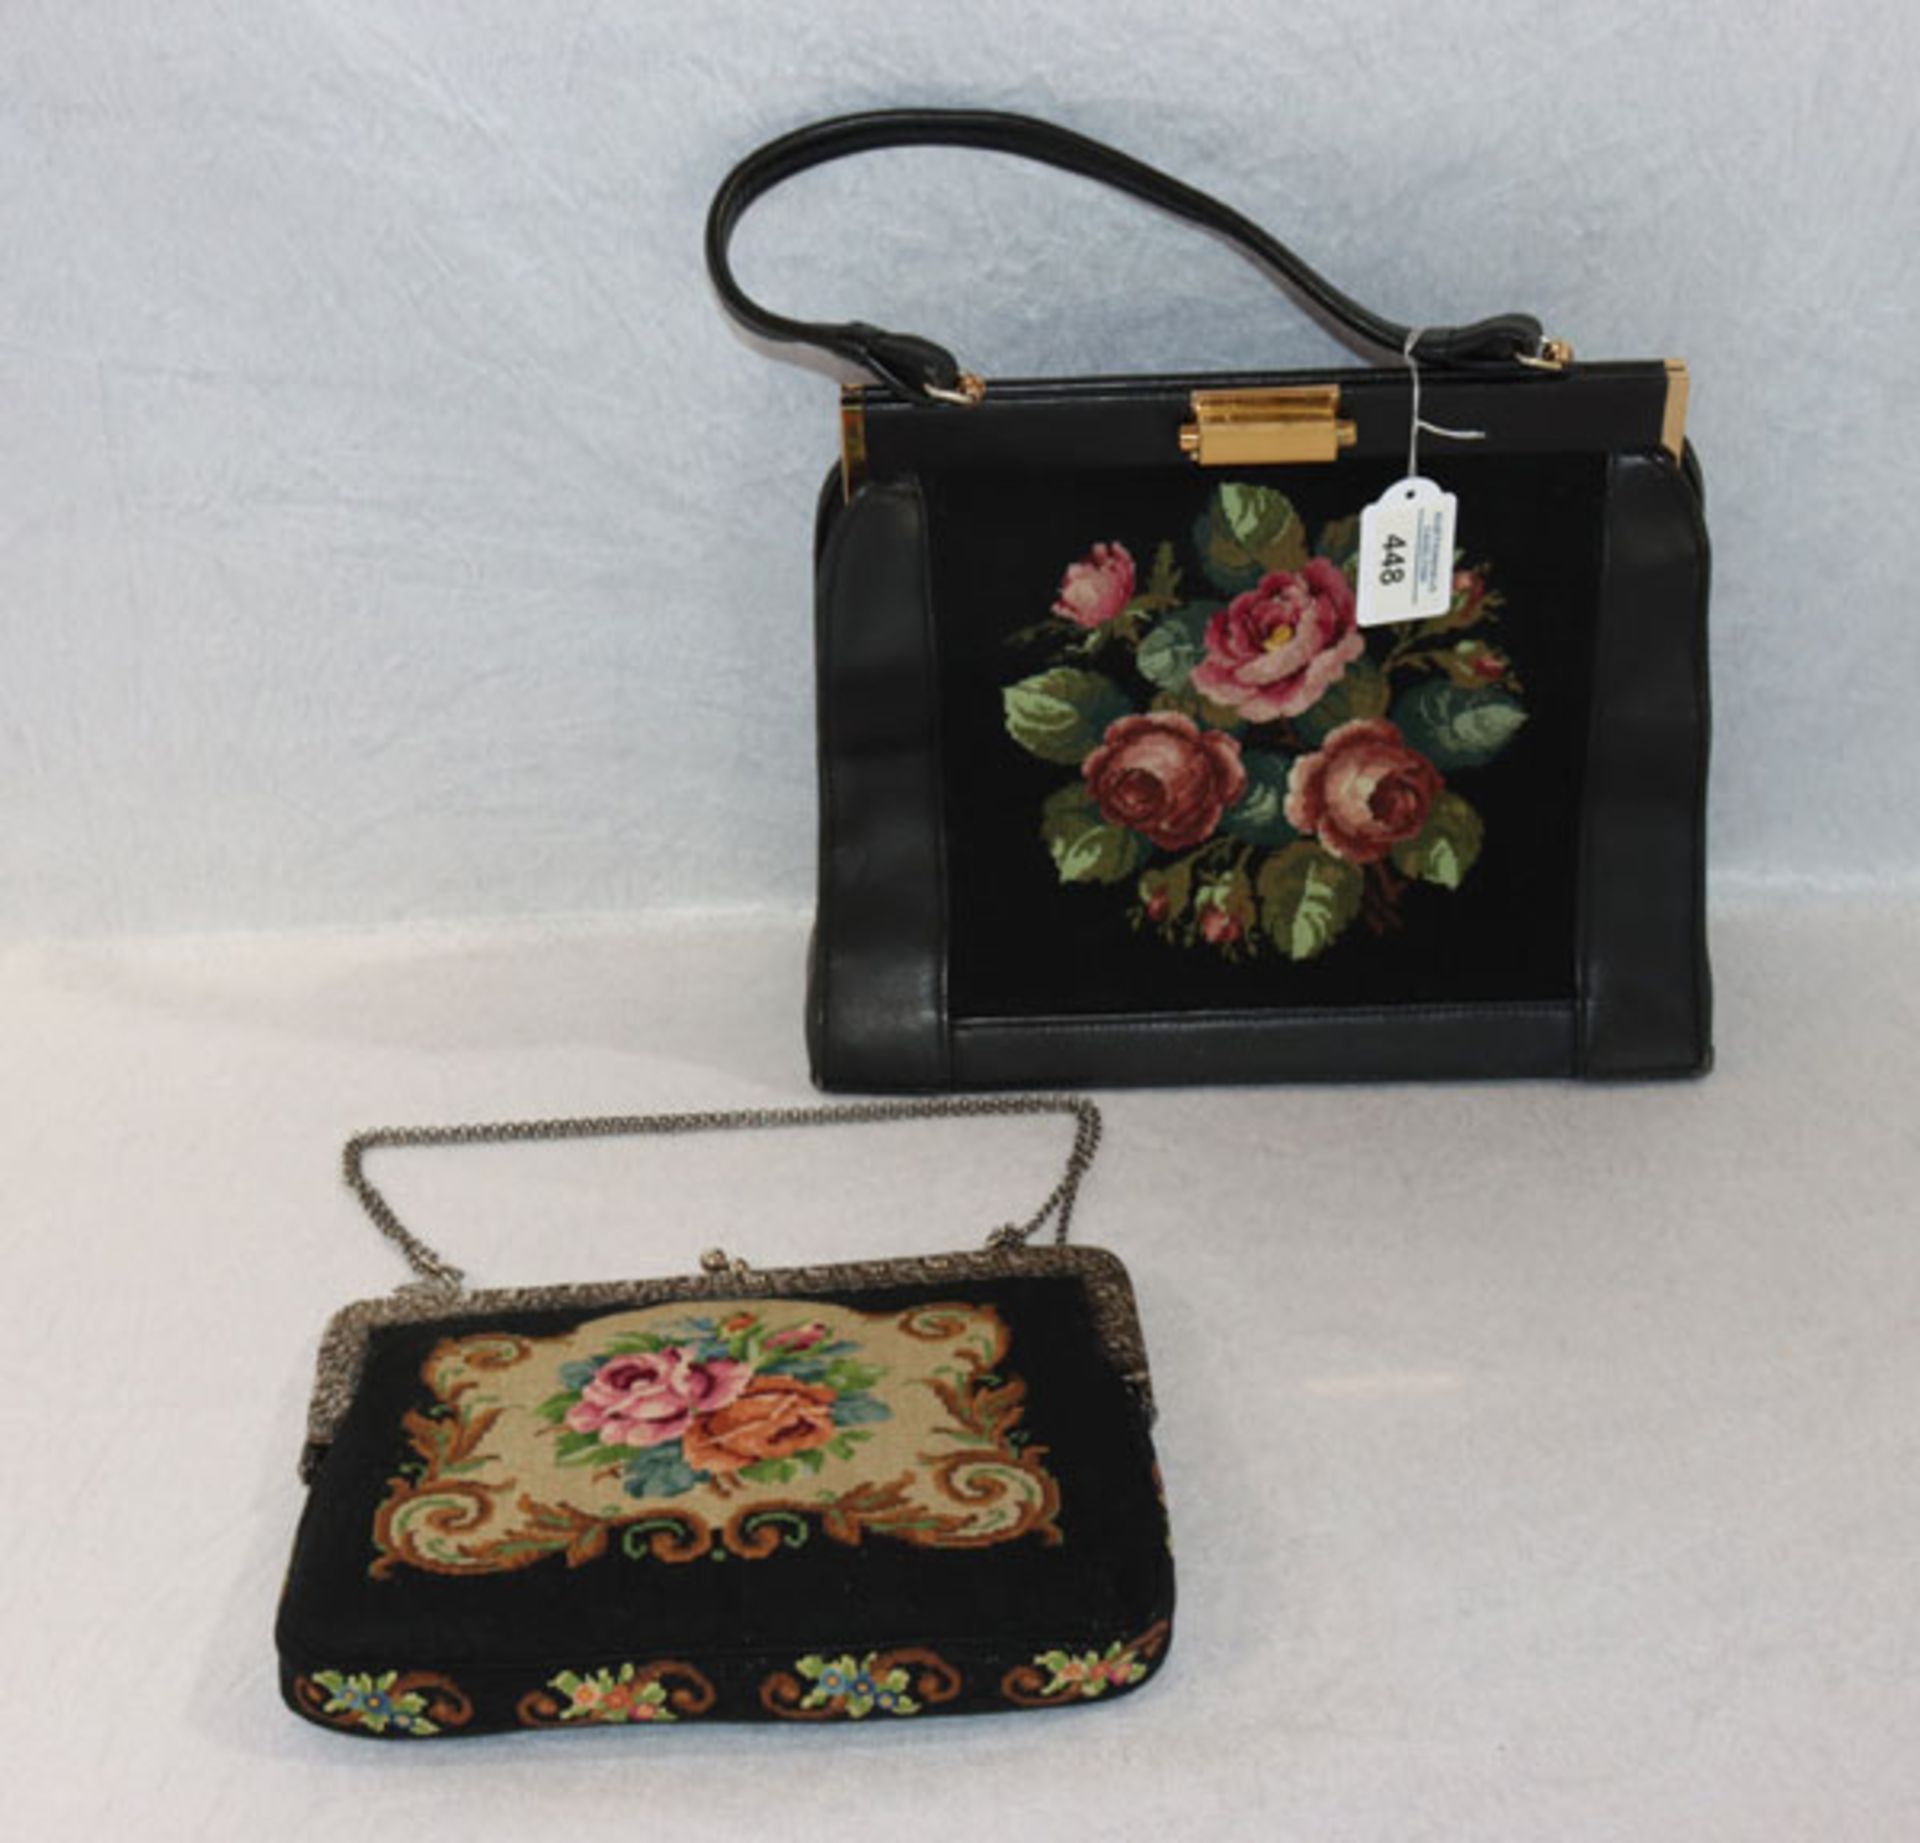 Damenhandtasche mit 800 Silberbügel und floraler Gobelinstickerei, 20 cm x 24 cm, und